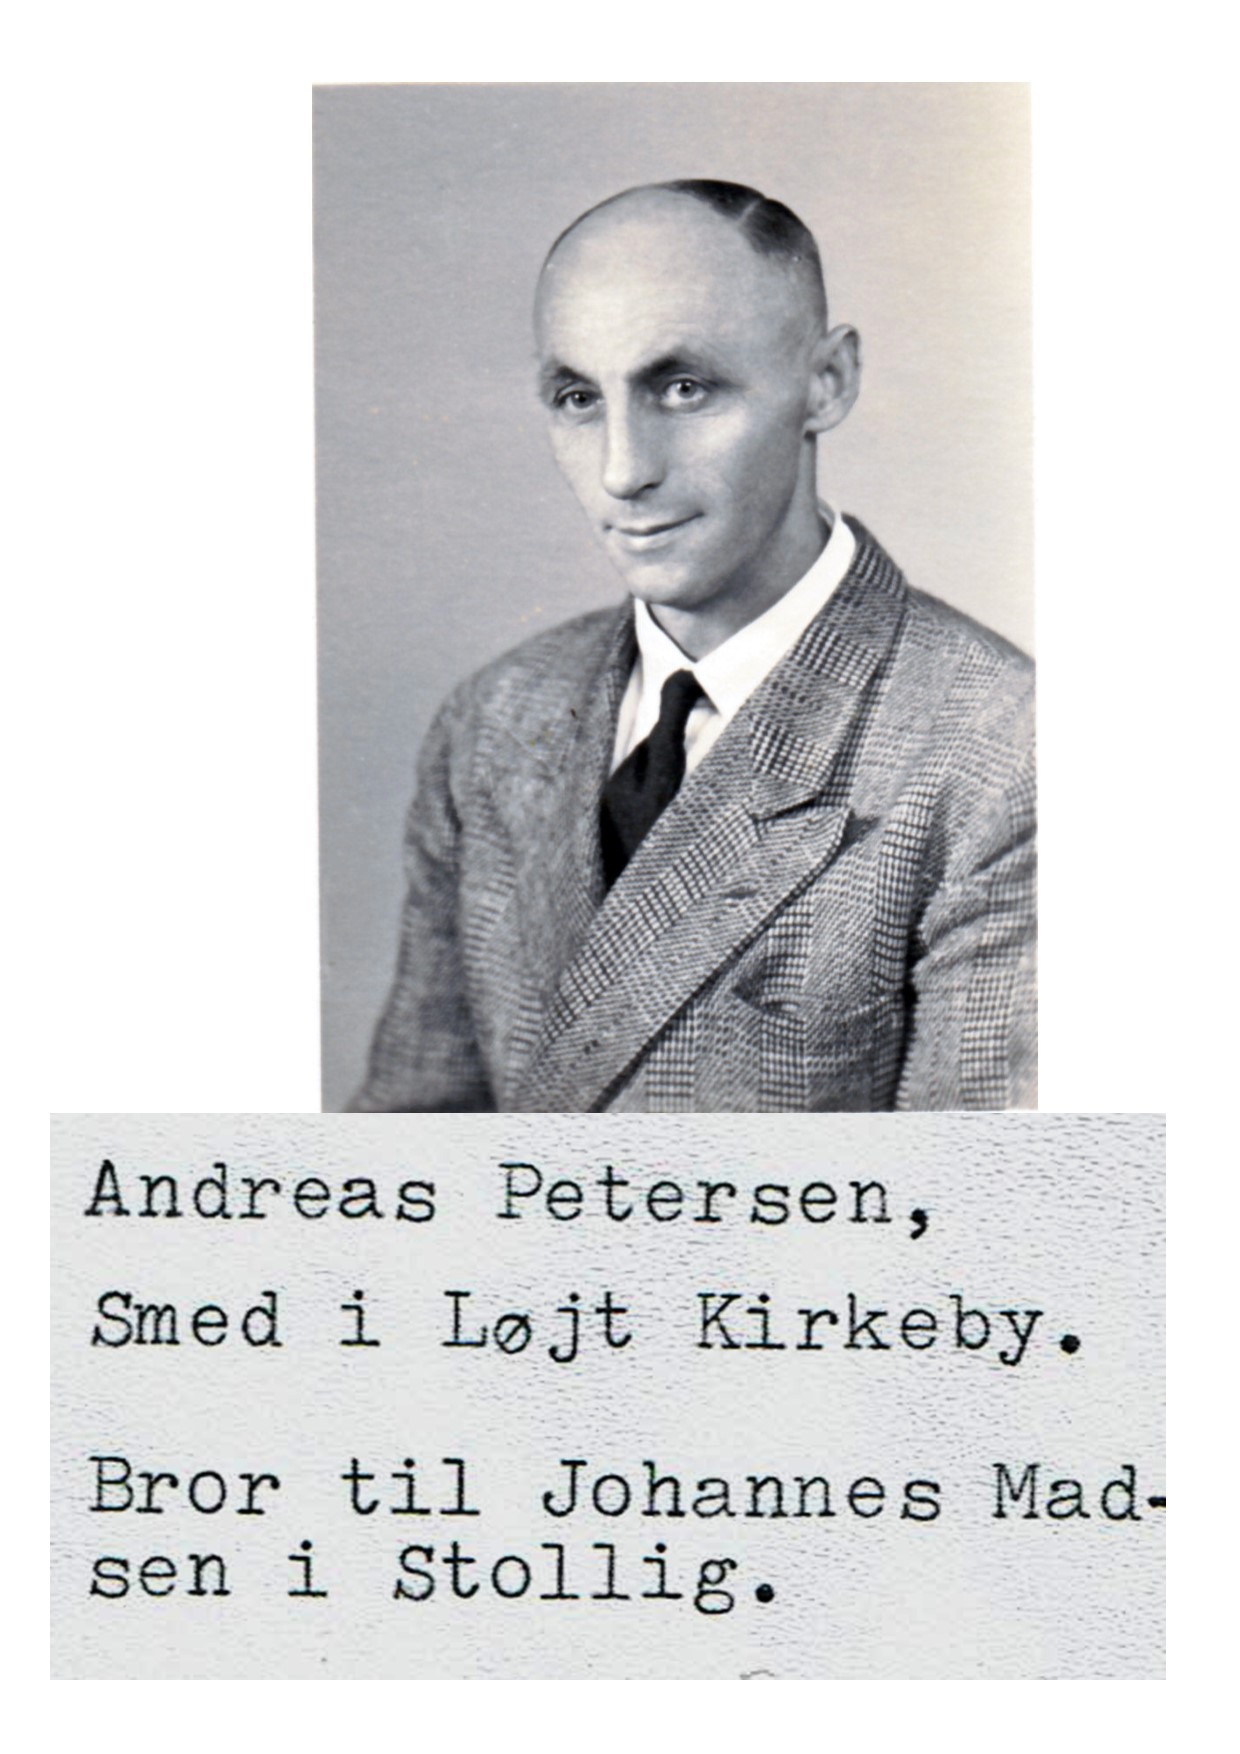 Andreas Petersen